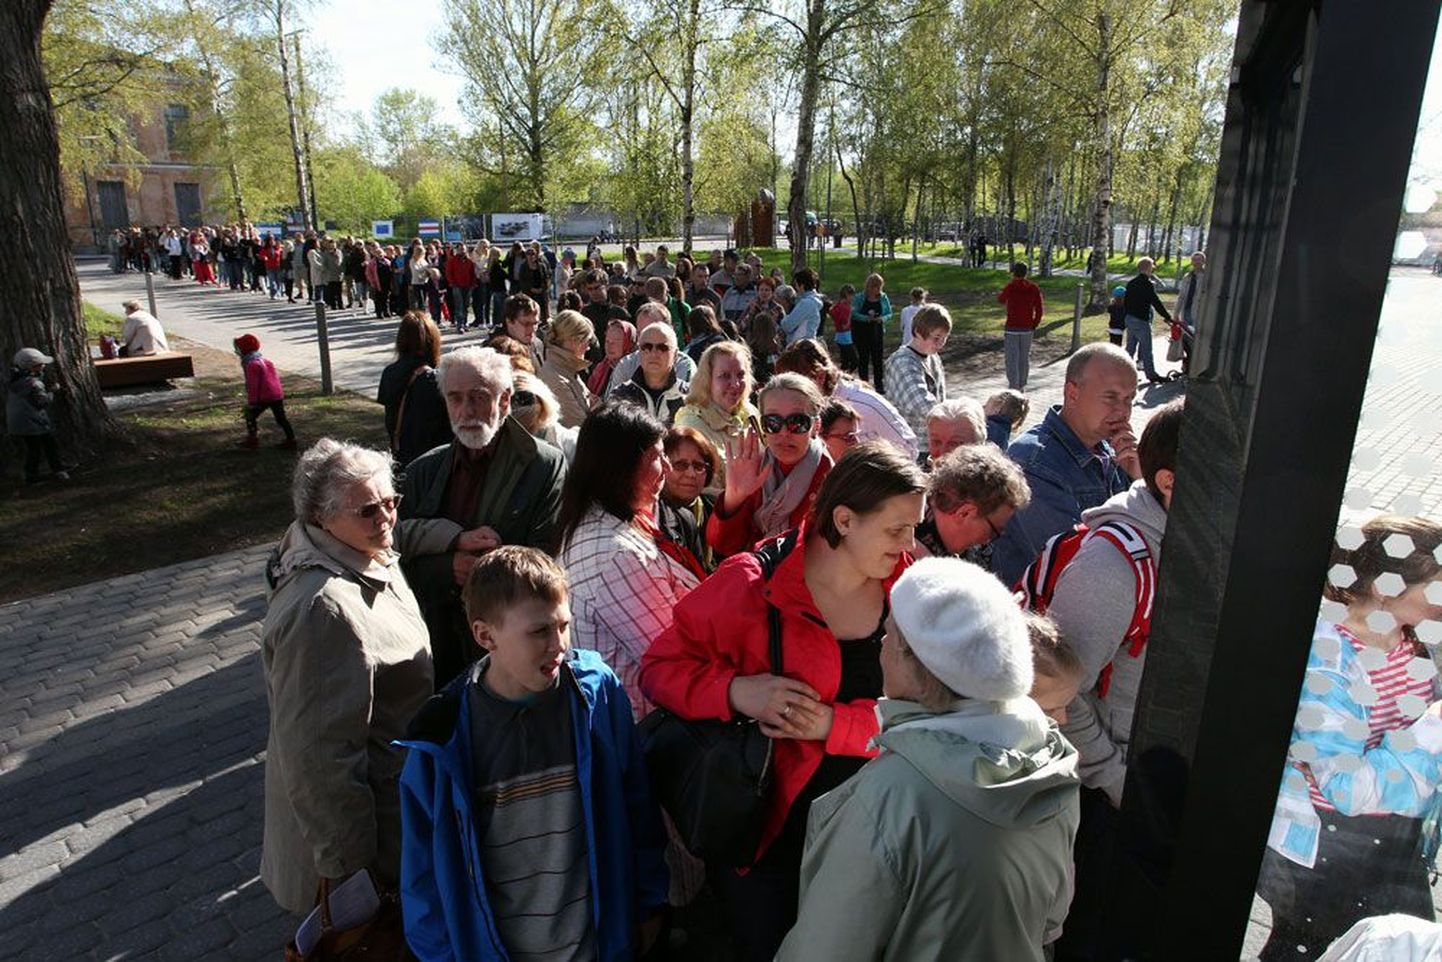 Nädal tagasi uudistajatele avatud Tallinna Lennusadama vesilennukite angaaride värava taga moodustus huvilistest pikk saba, korraga lasti sisse kuni 300 inimest.